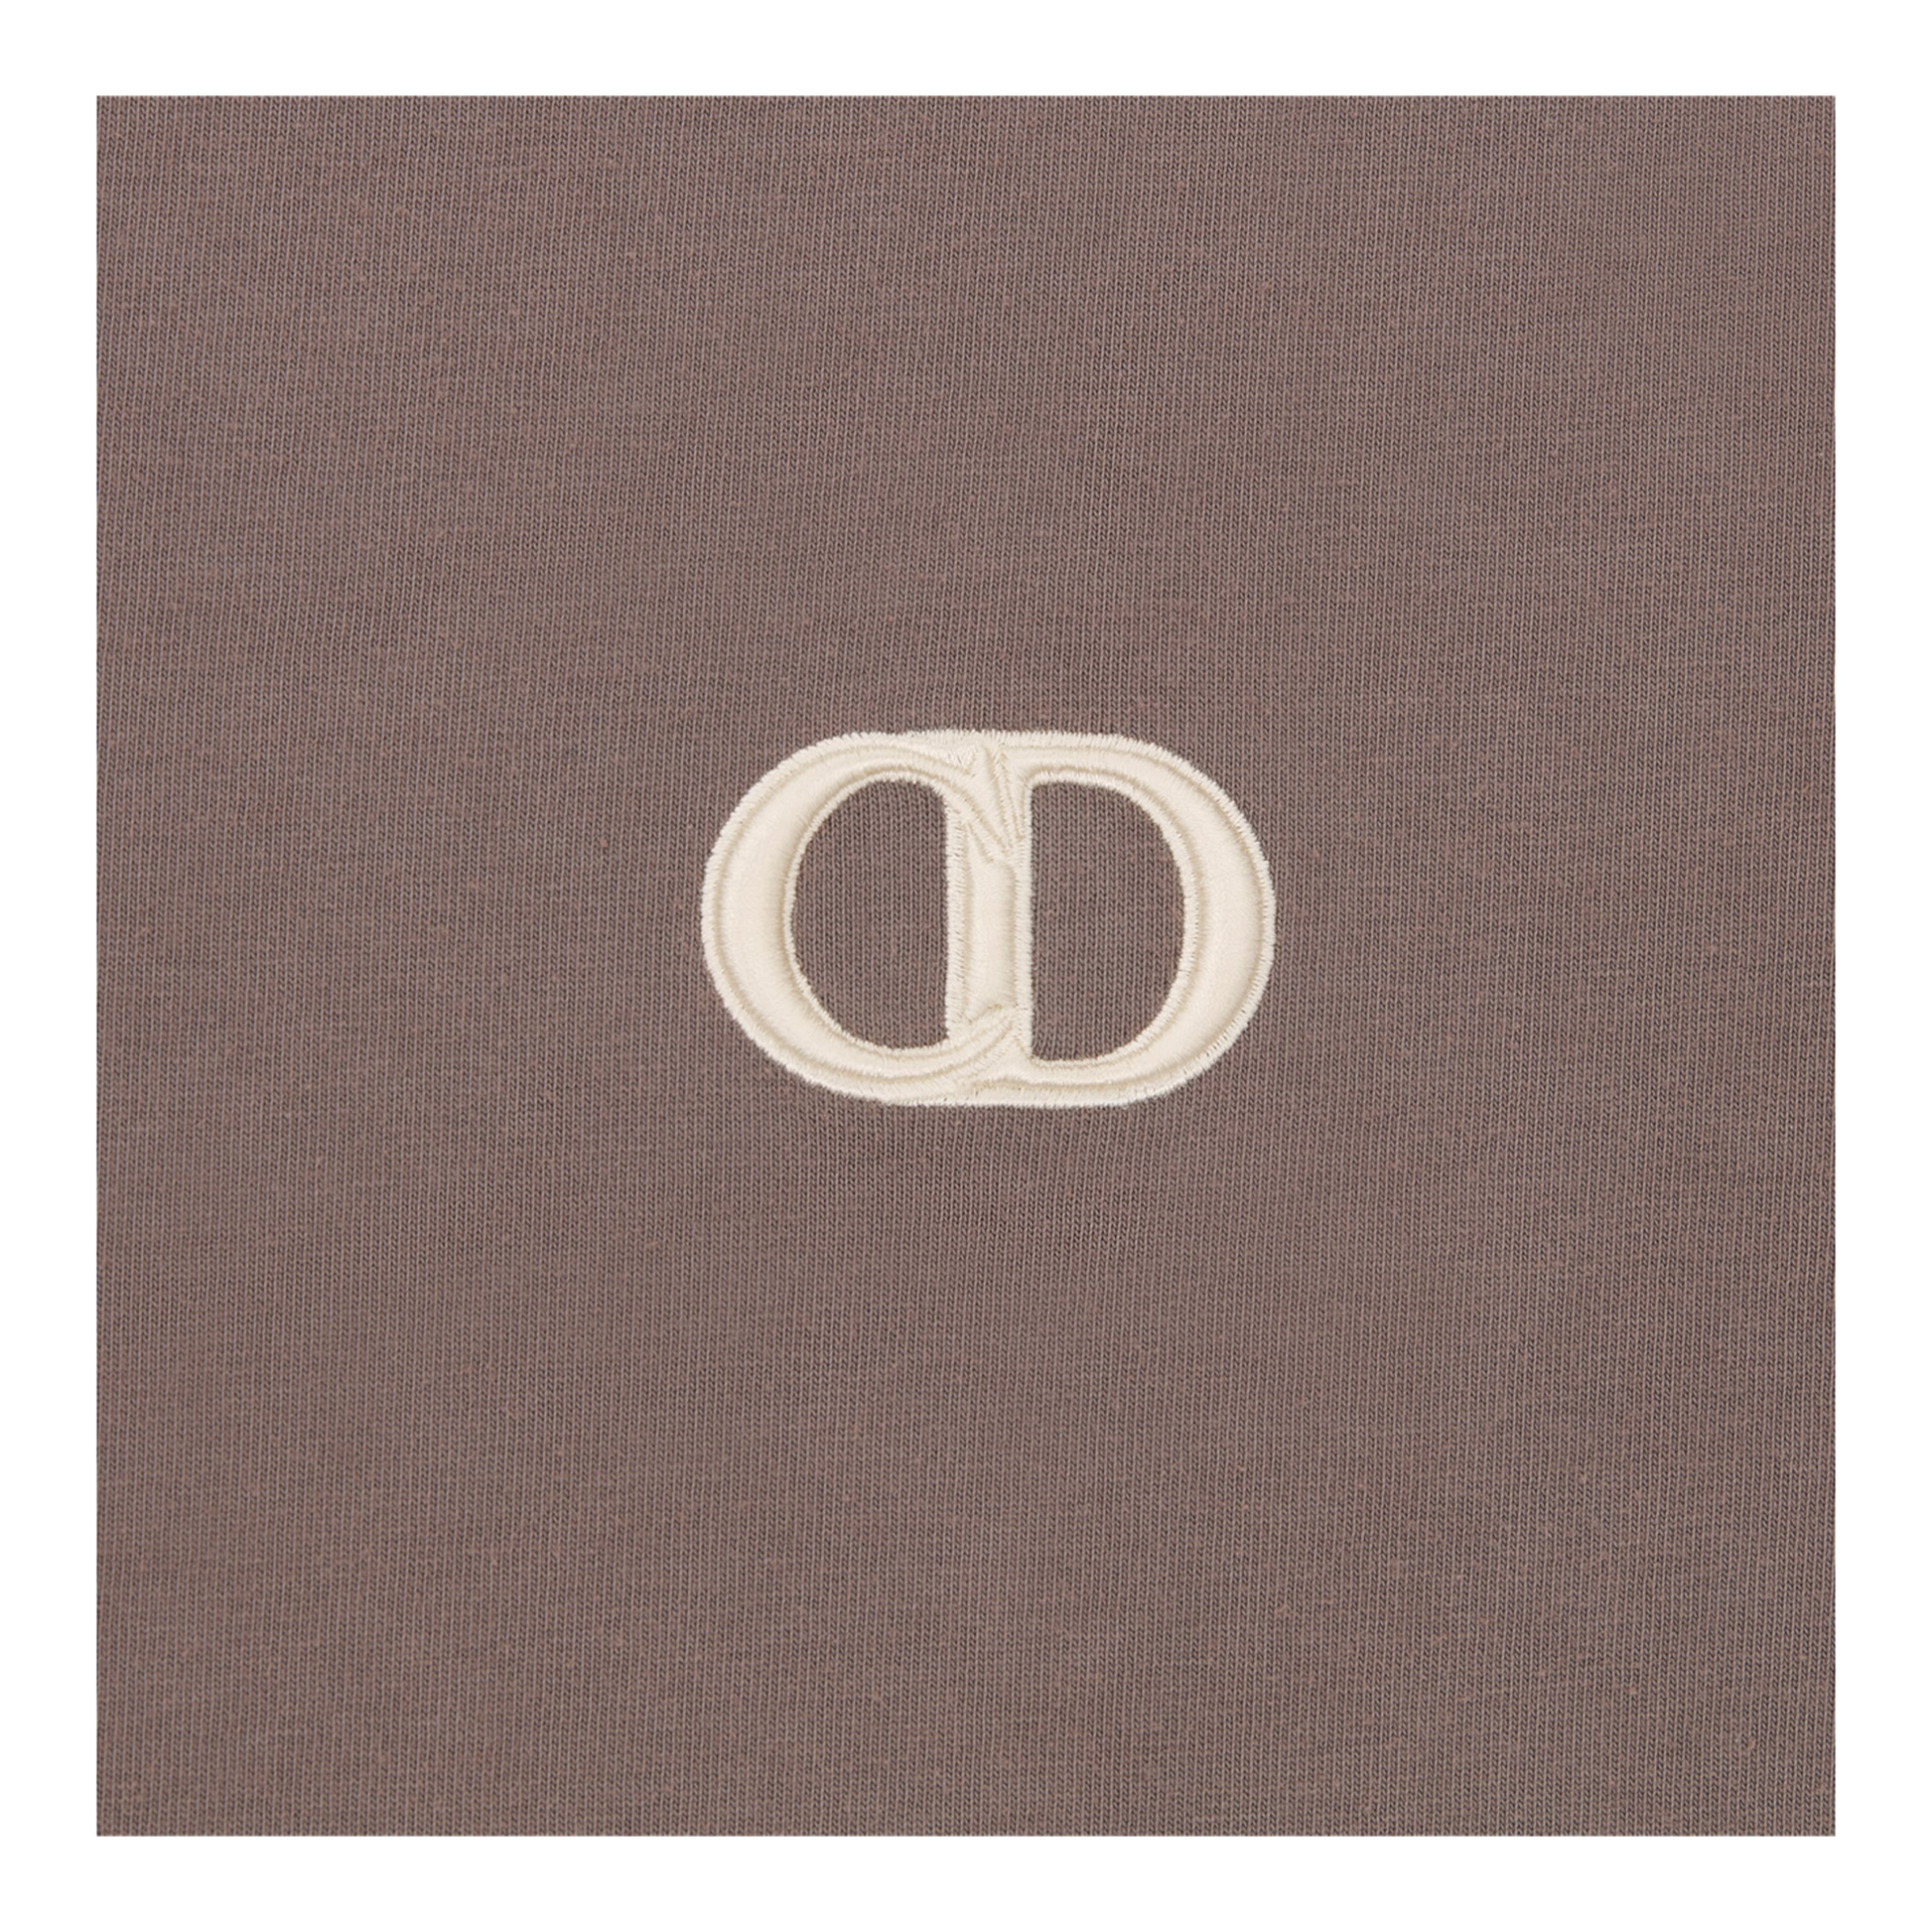 Dior CD Brown T-Shirt - Fairchild Fashion 